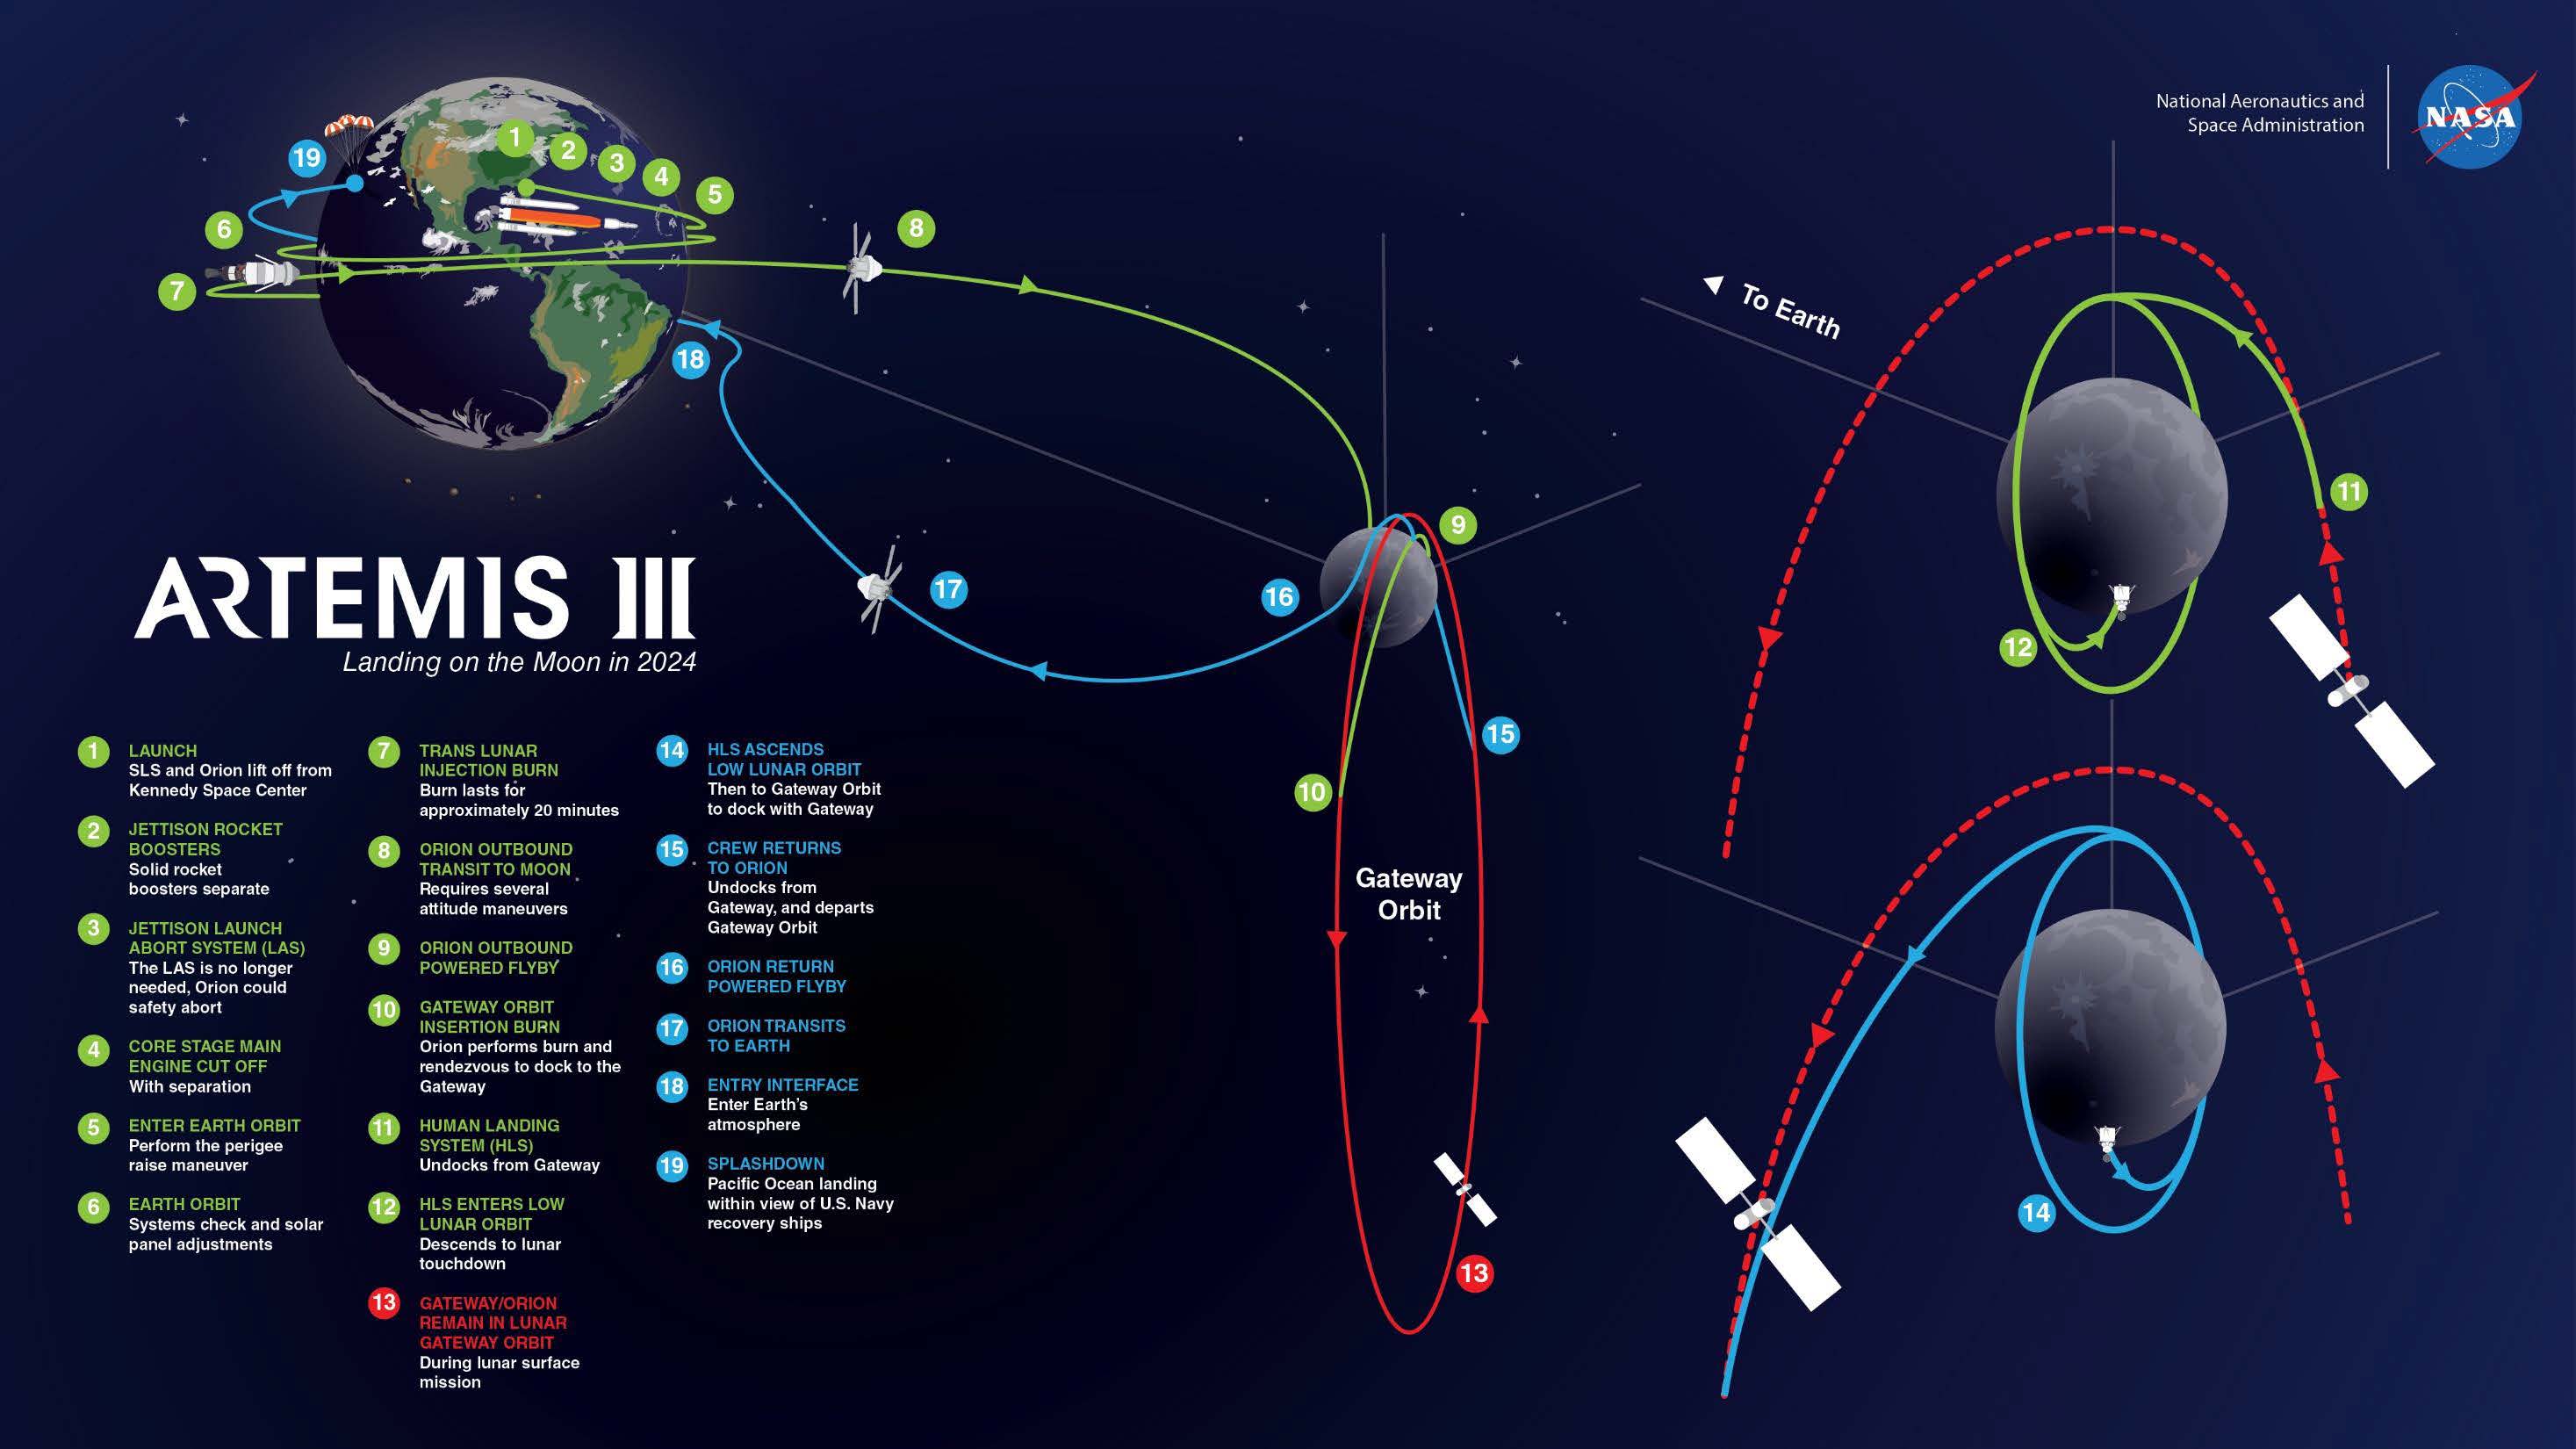 Artemis III Mission. Credit: NASA